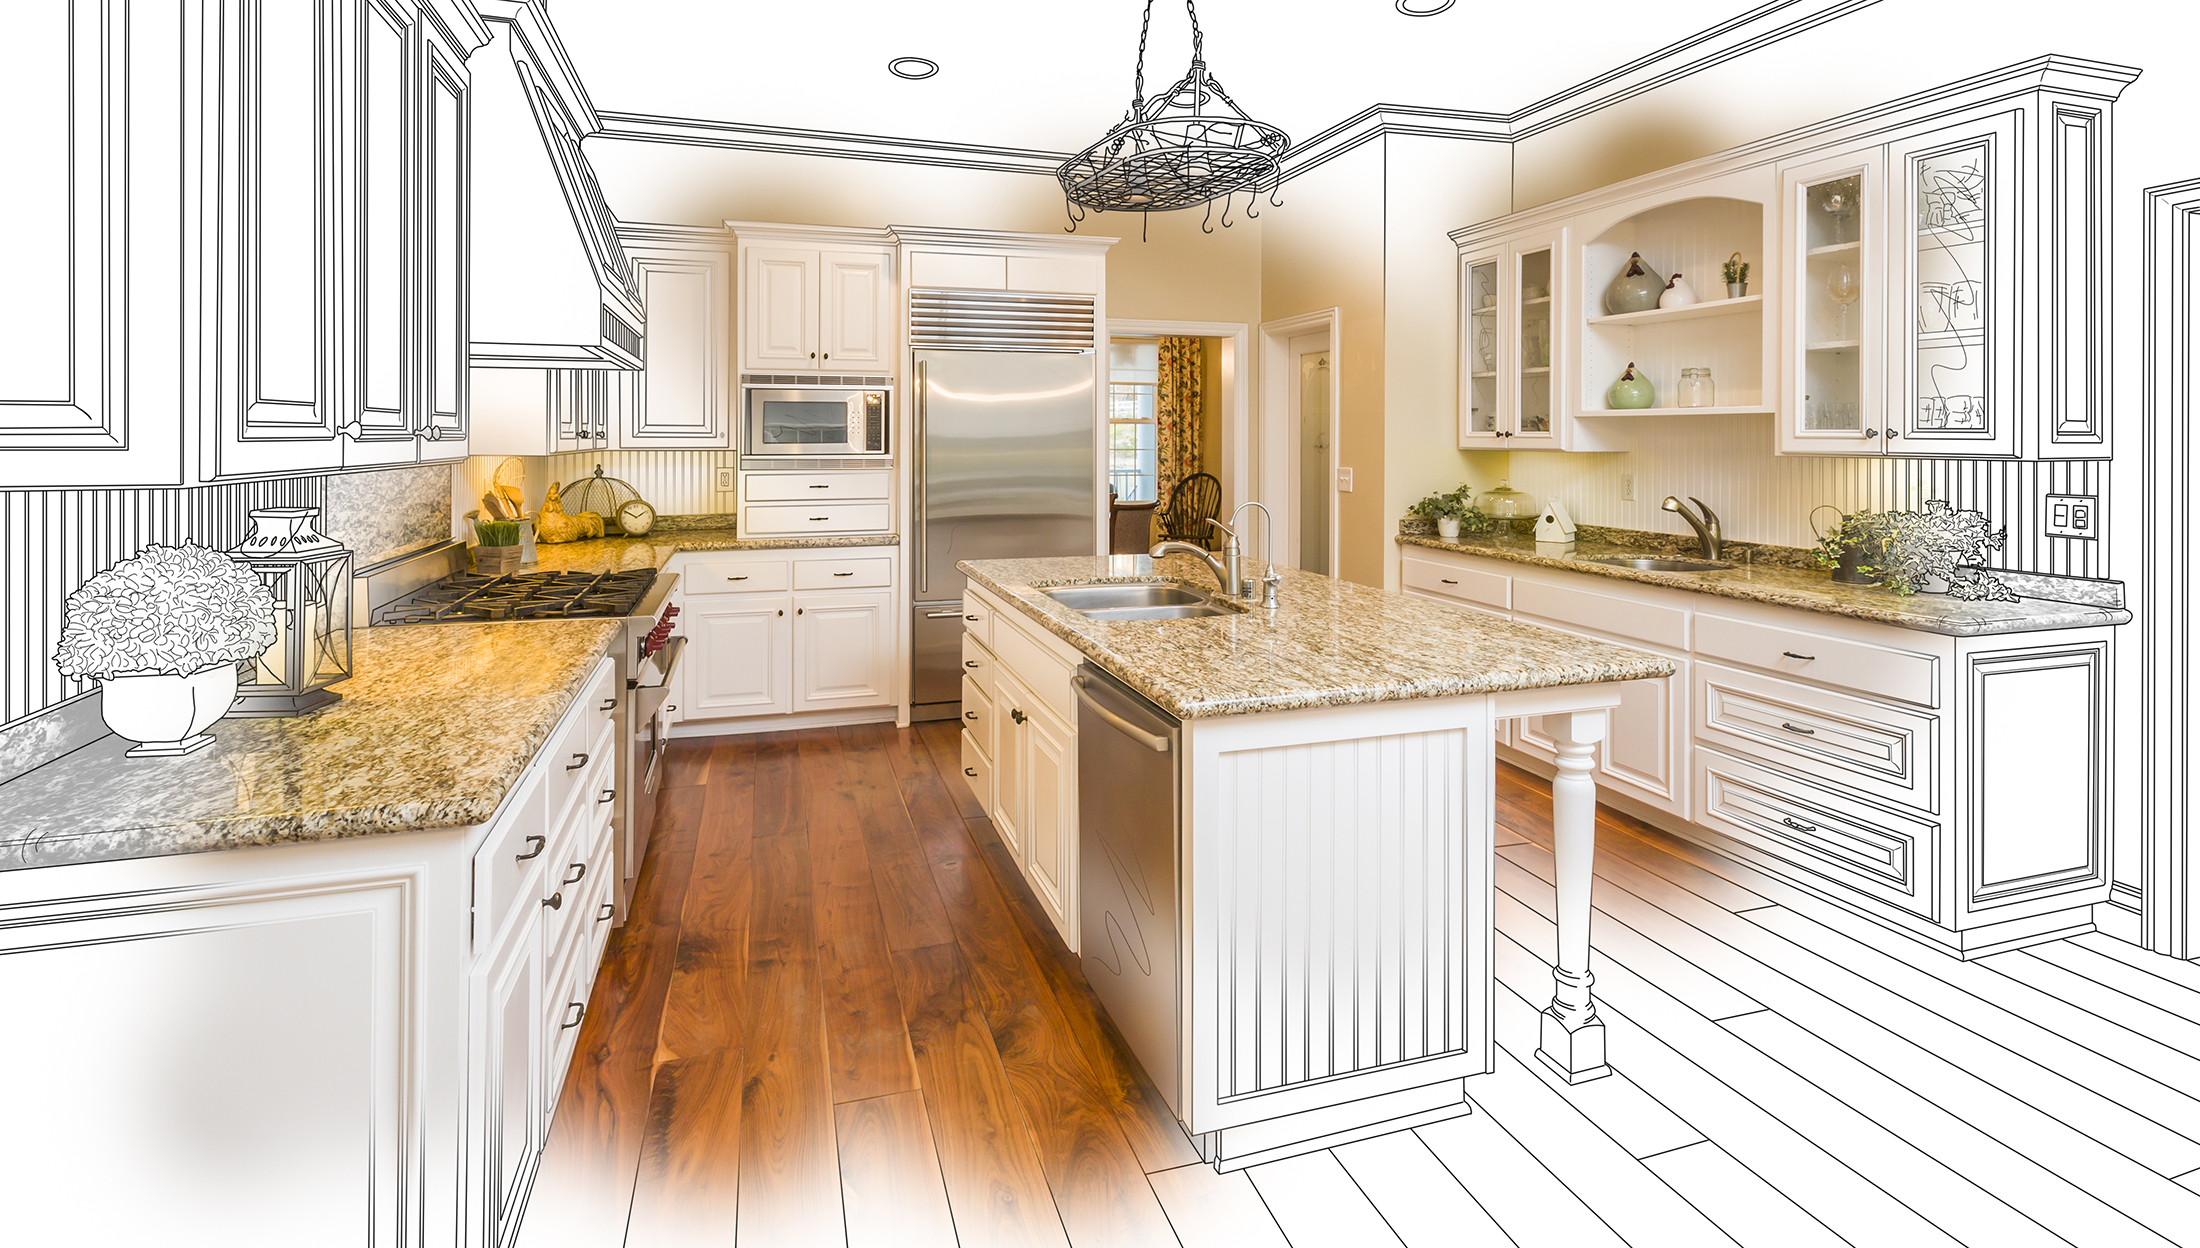 planning your dream kitchen | schroll cabinets | colorado wyoming | custom kitchen design 